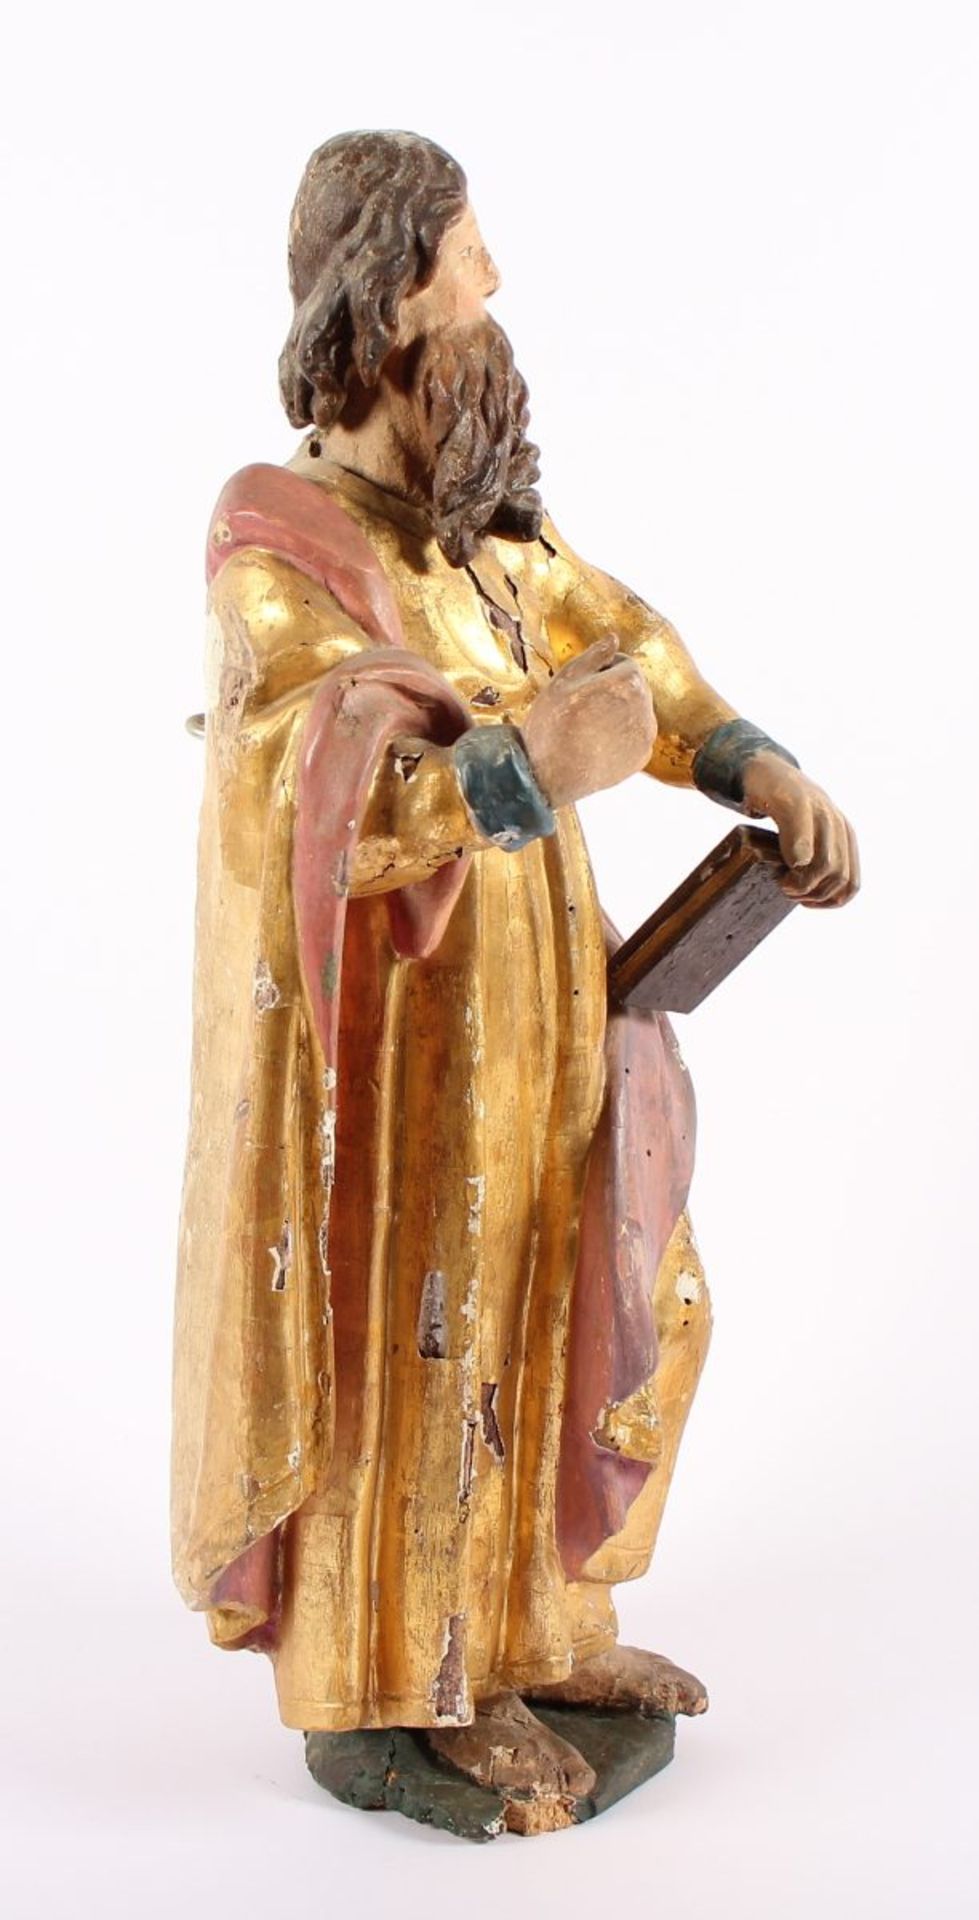 HEILIGER PAULUS UND KLEINER ENGEL, Holz, geschnitzt, farbig gefasst, vergoldet, H 48 und H 23, - Bild 3 aus 6